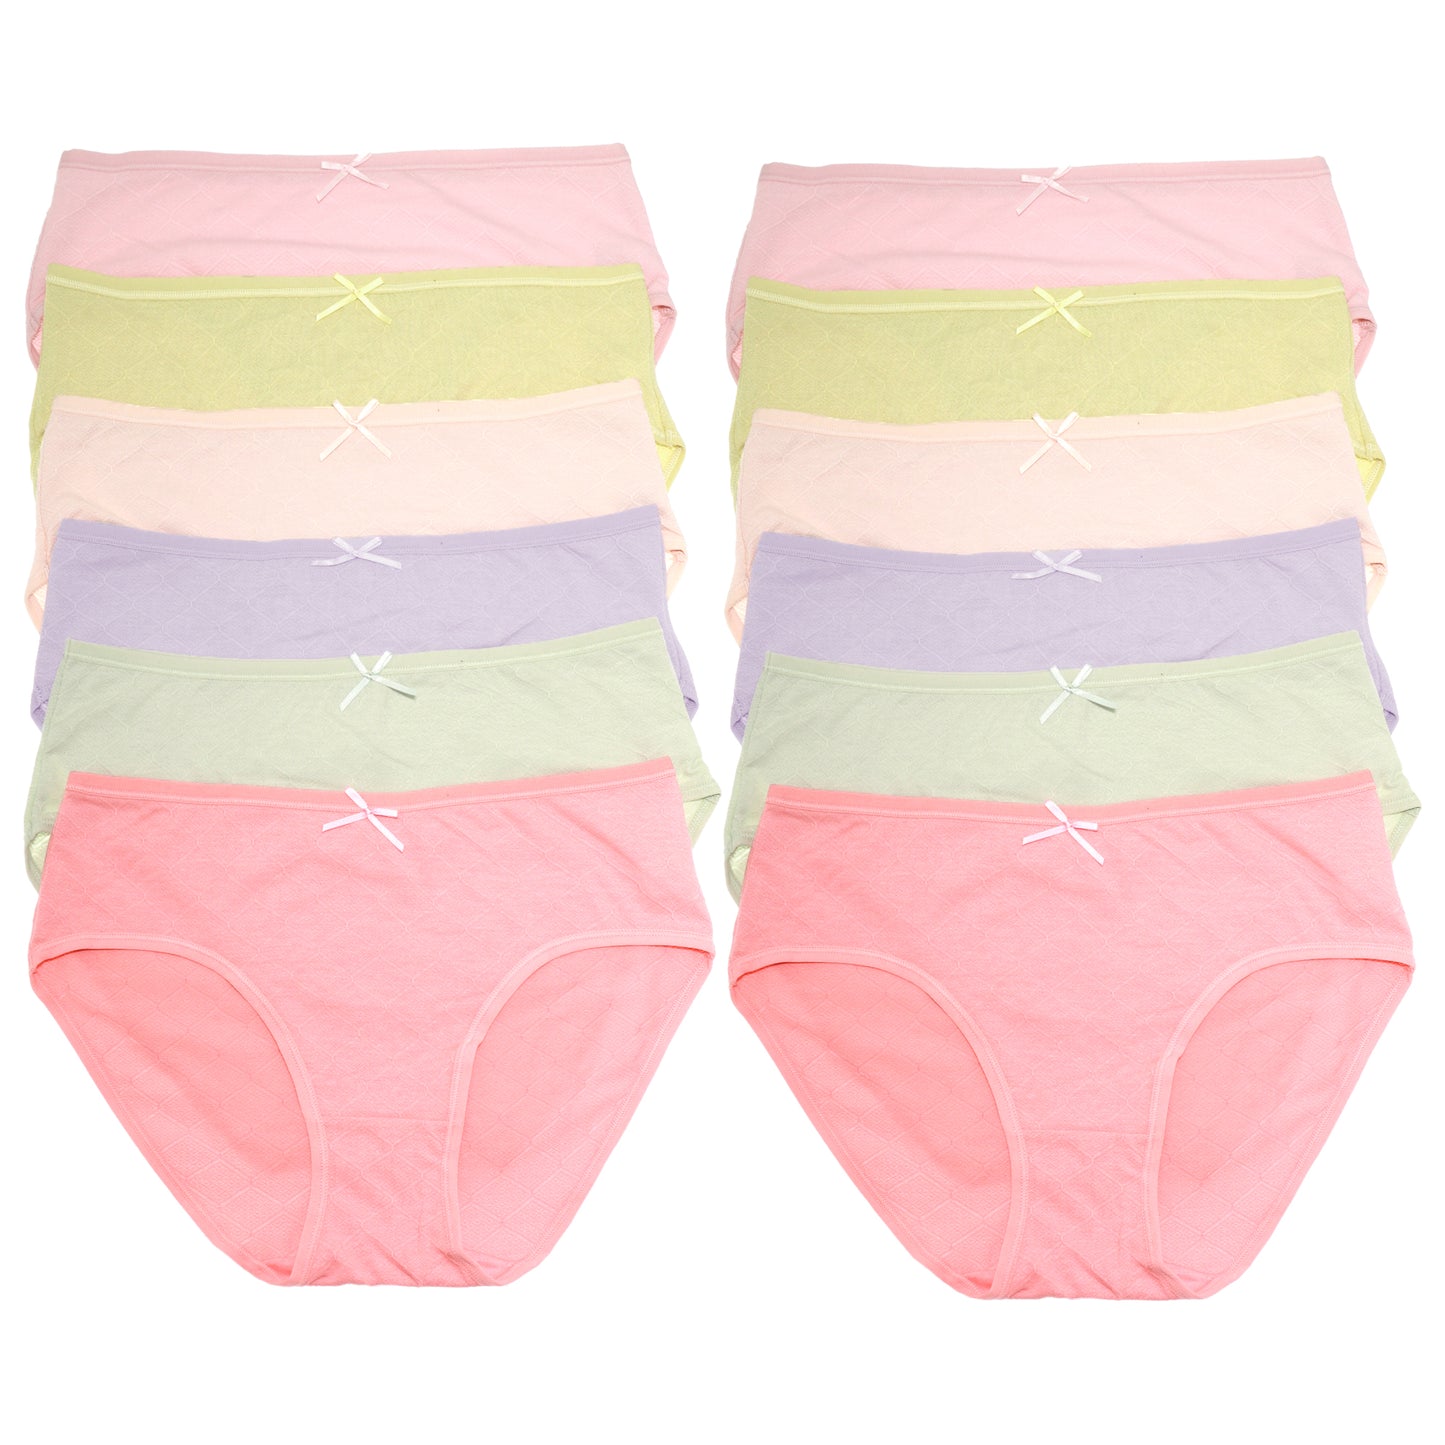 Cotton Bikini Panties with Diamond Pattern Design (6-Pack)